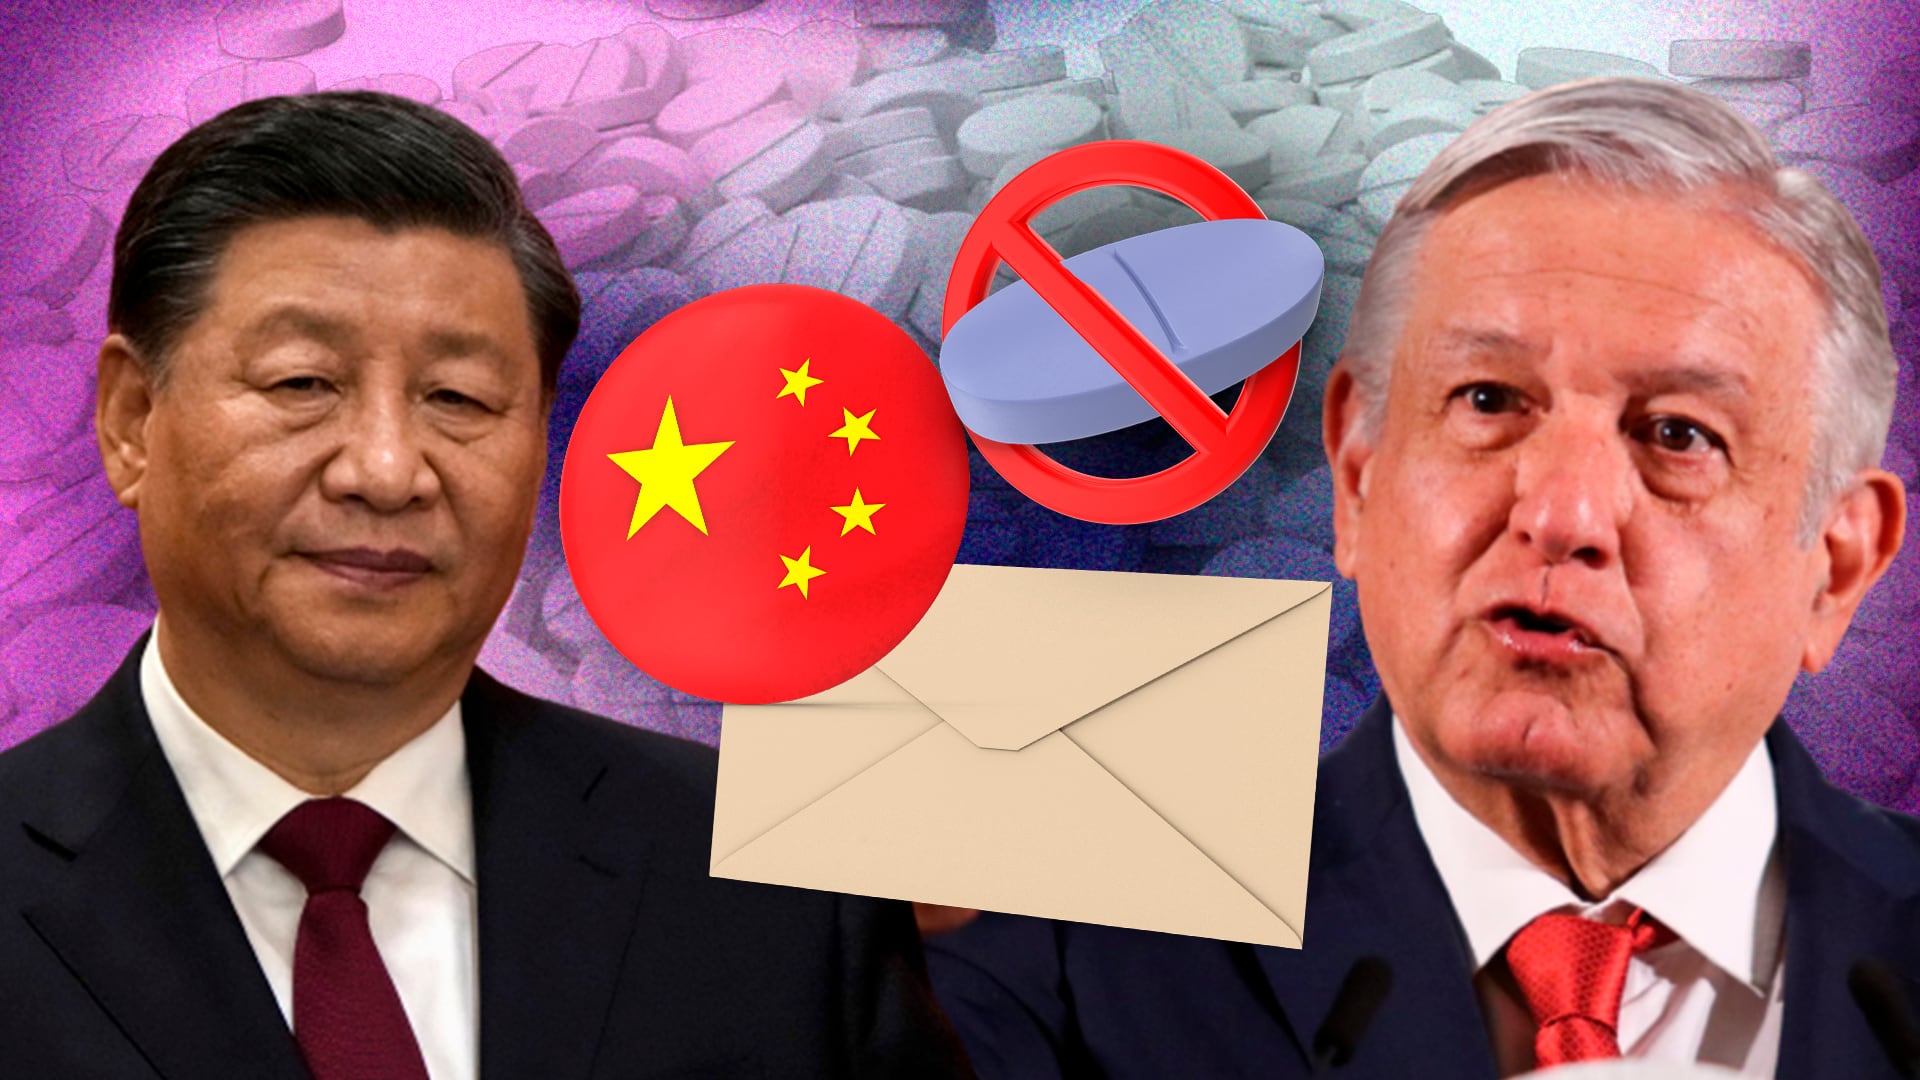 AMLO envió una carta a Xi Jinping para evitar distribución de fentanilo